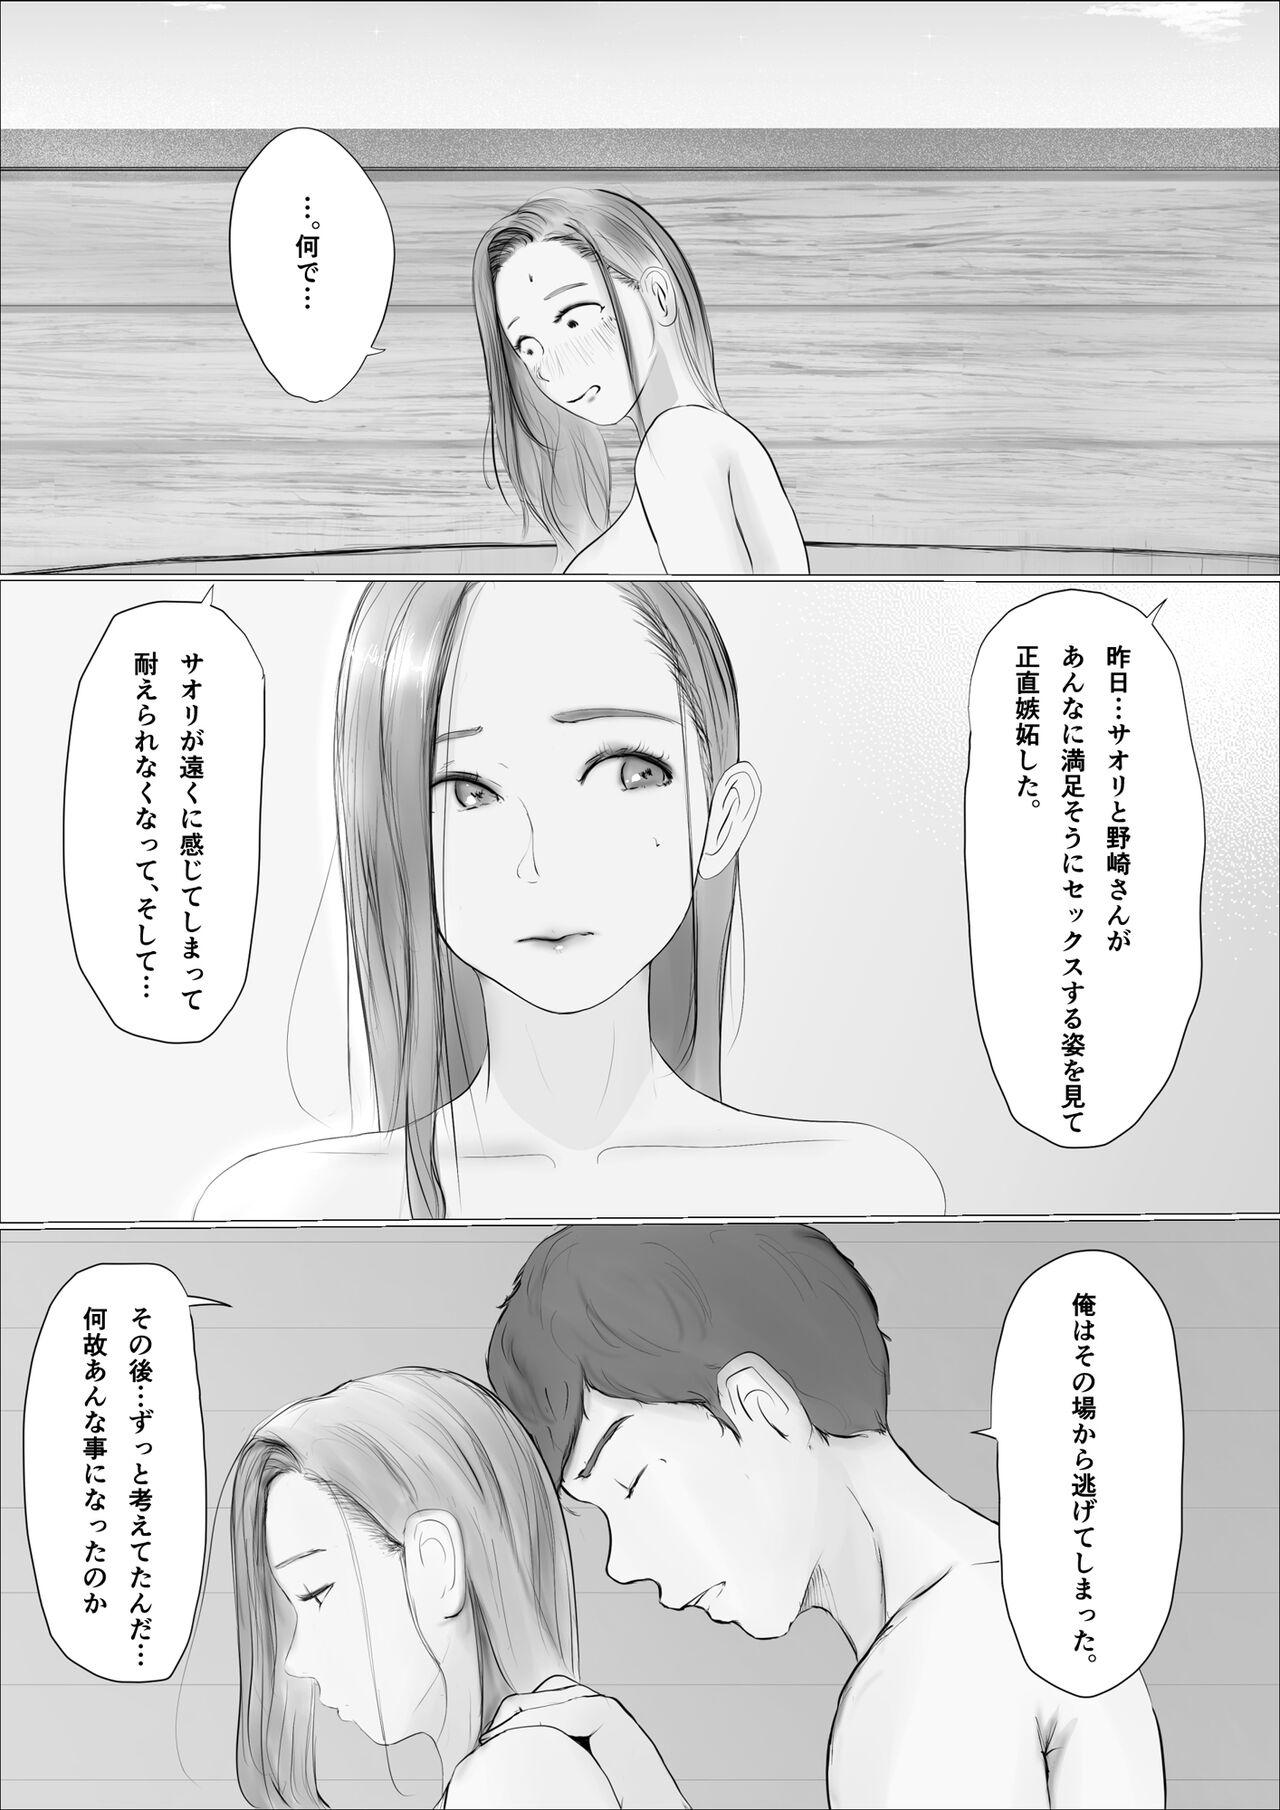 Ftv Girls 交換物語〜2日目〜 Porno 18 - Page 11